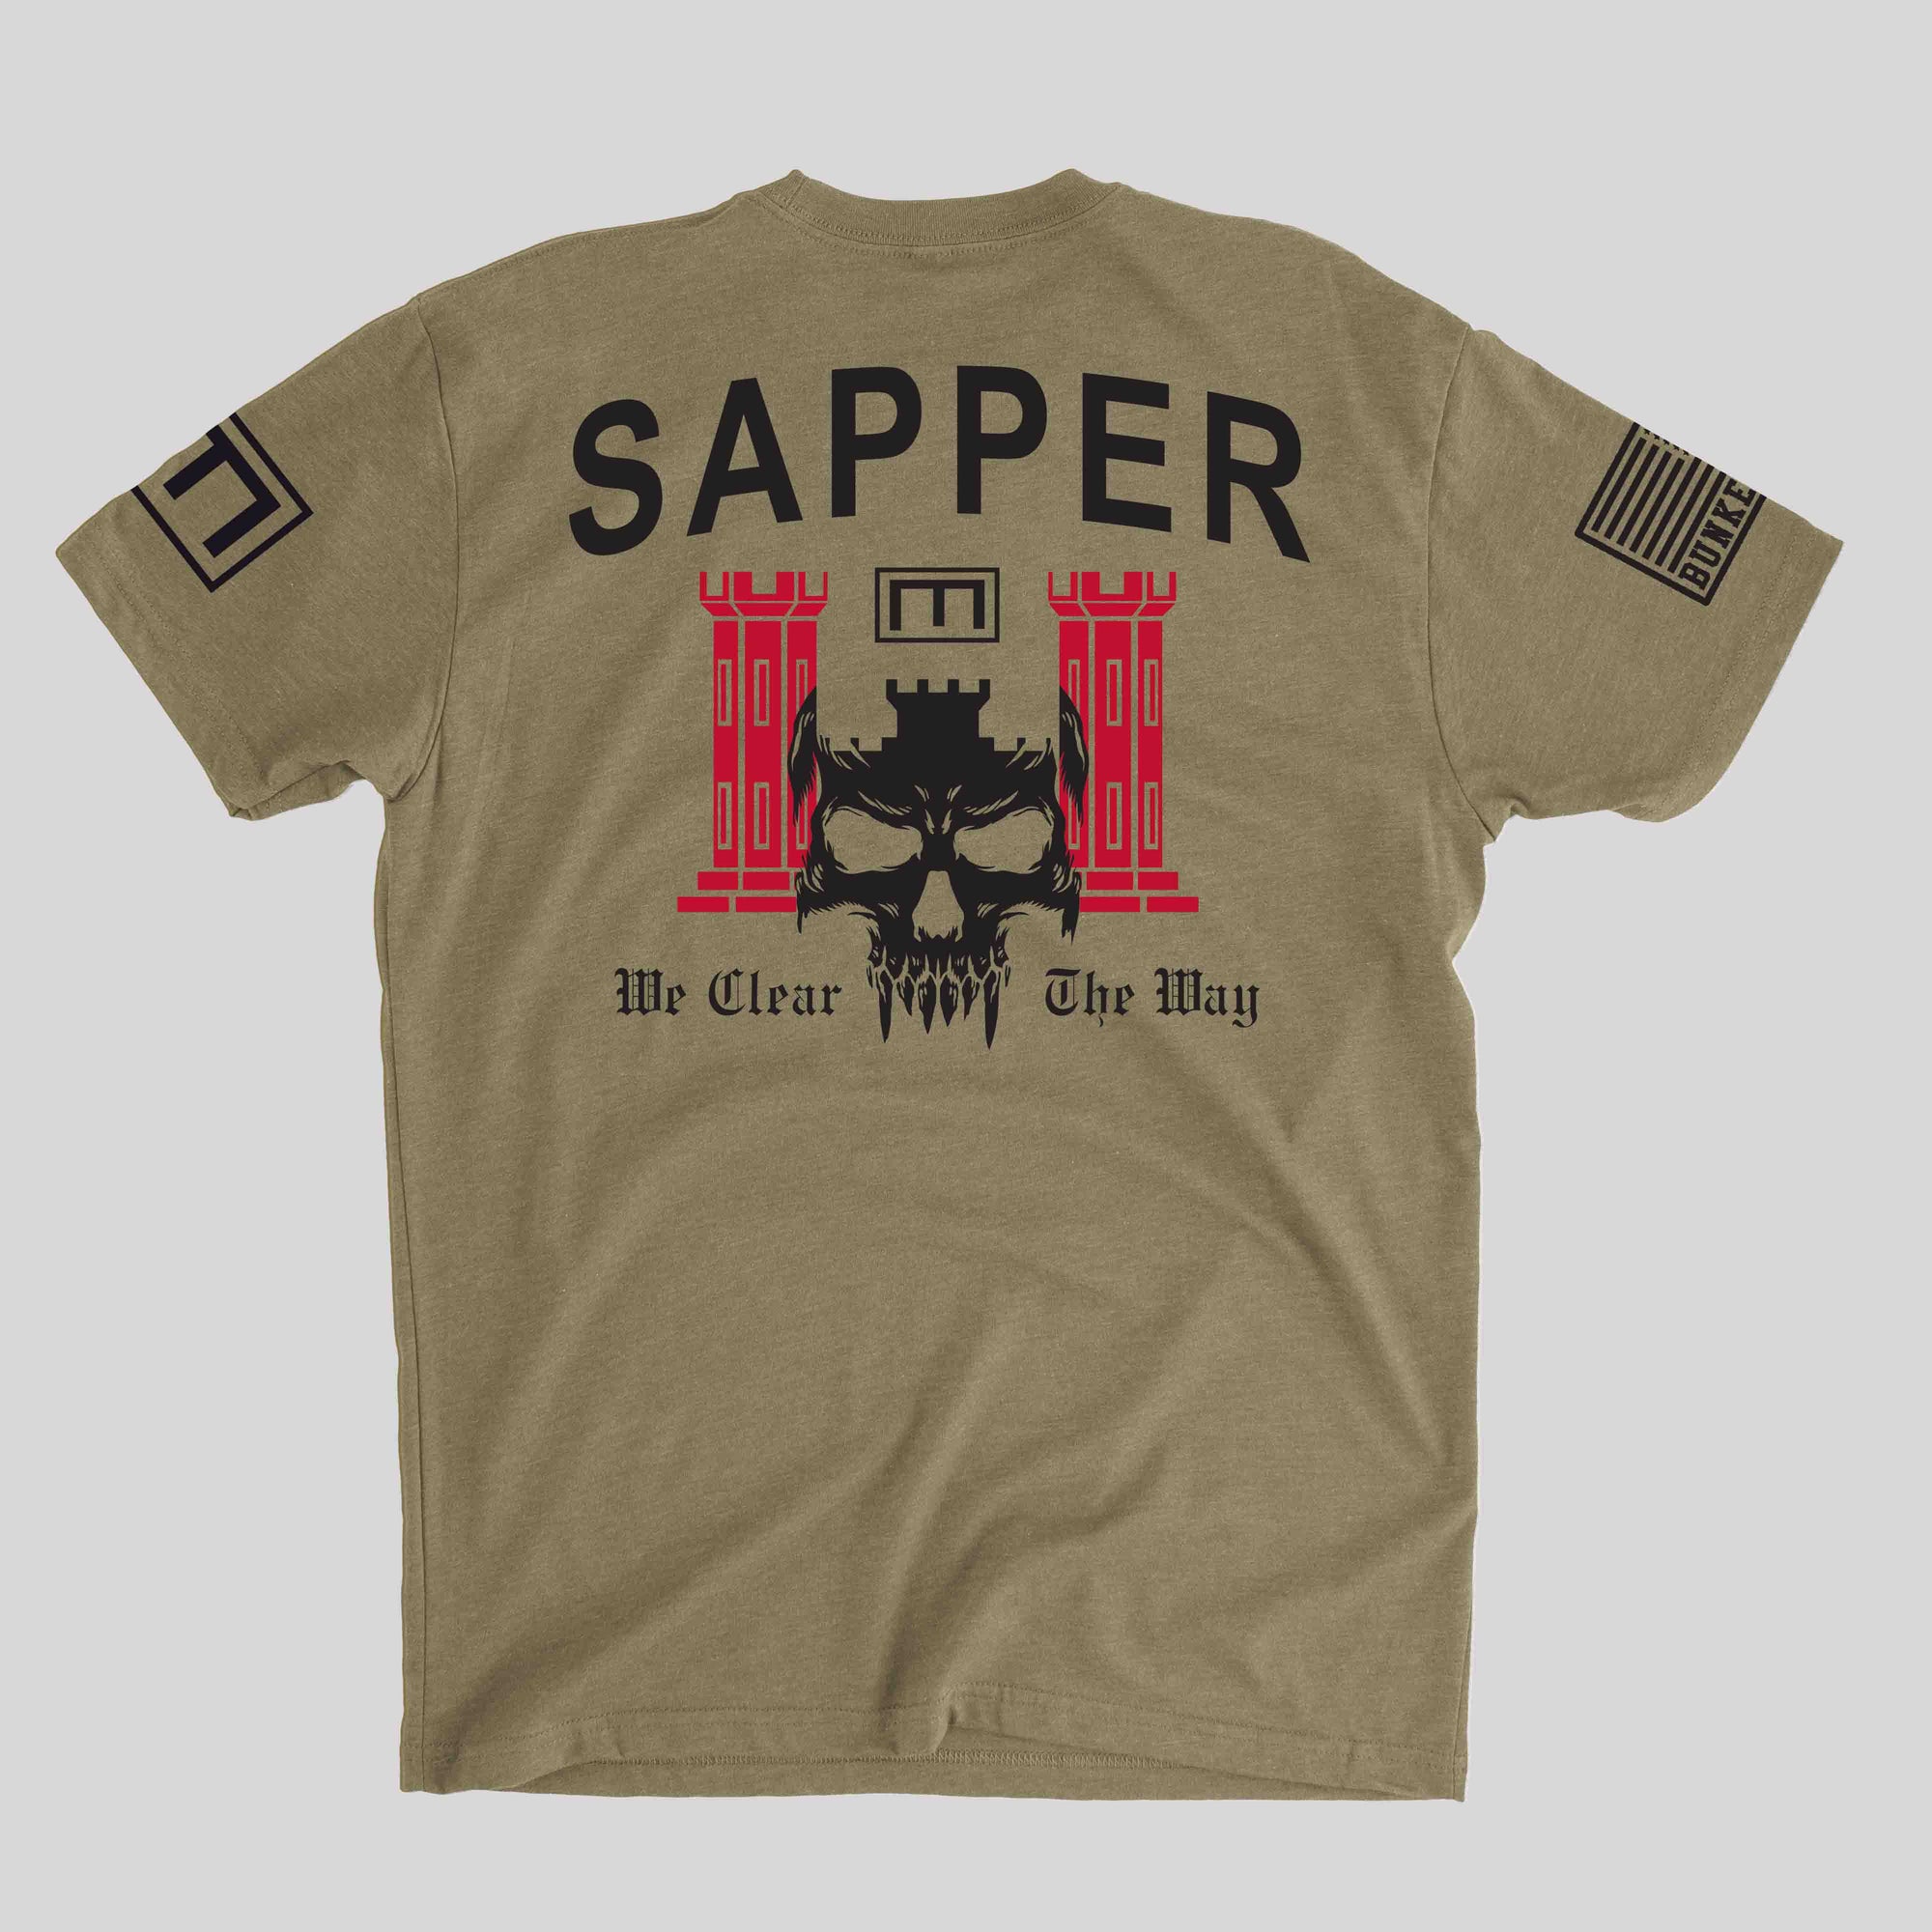 Sapper Engineer - Army